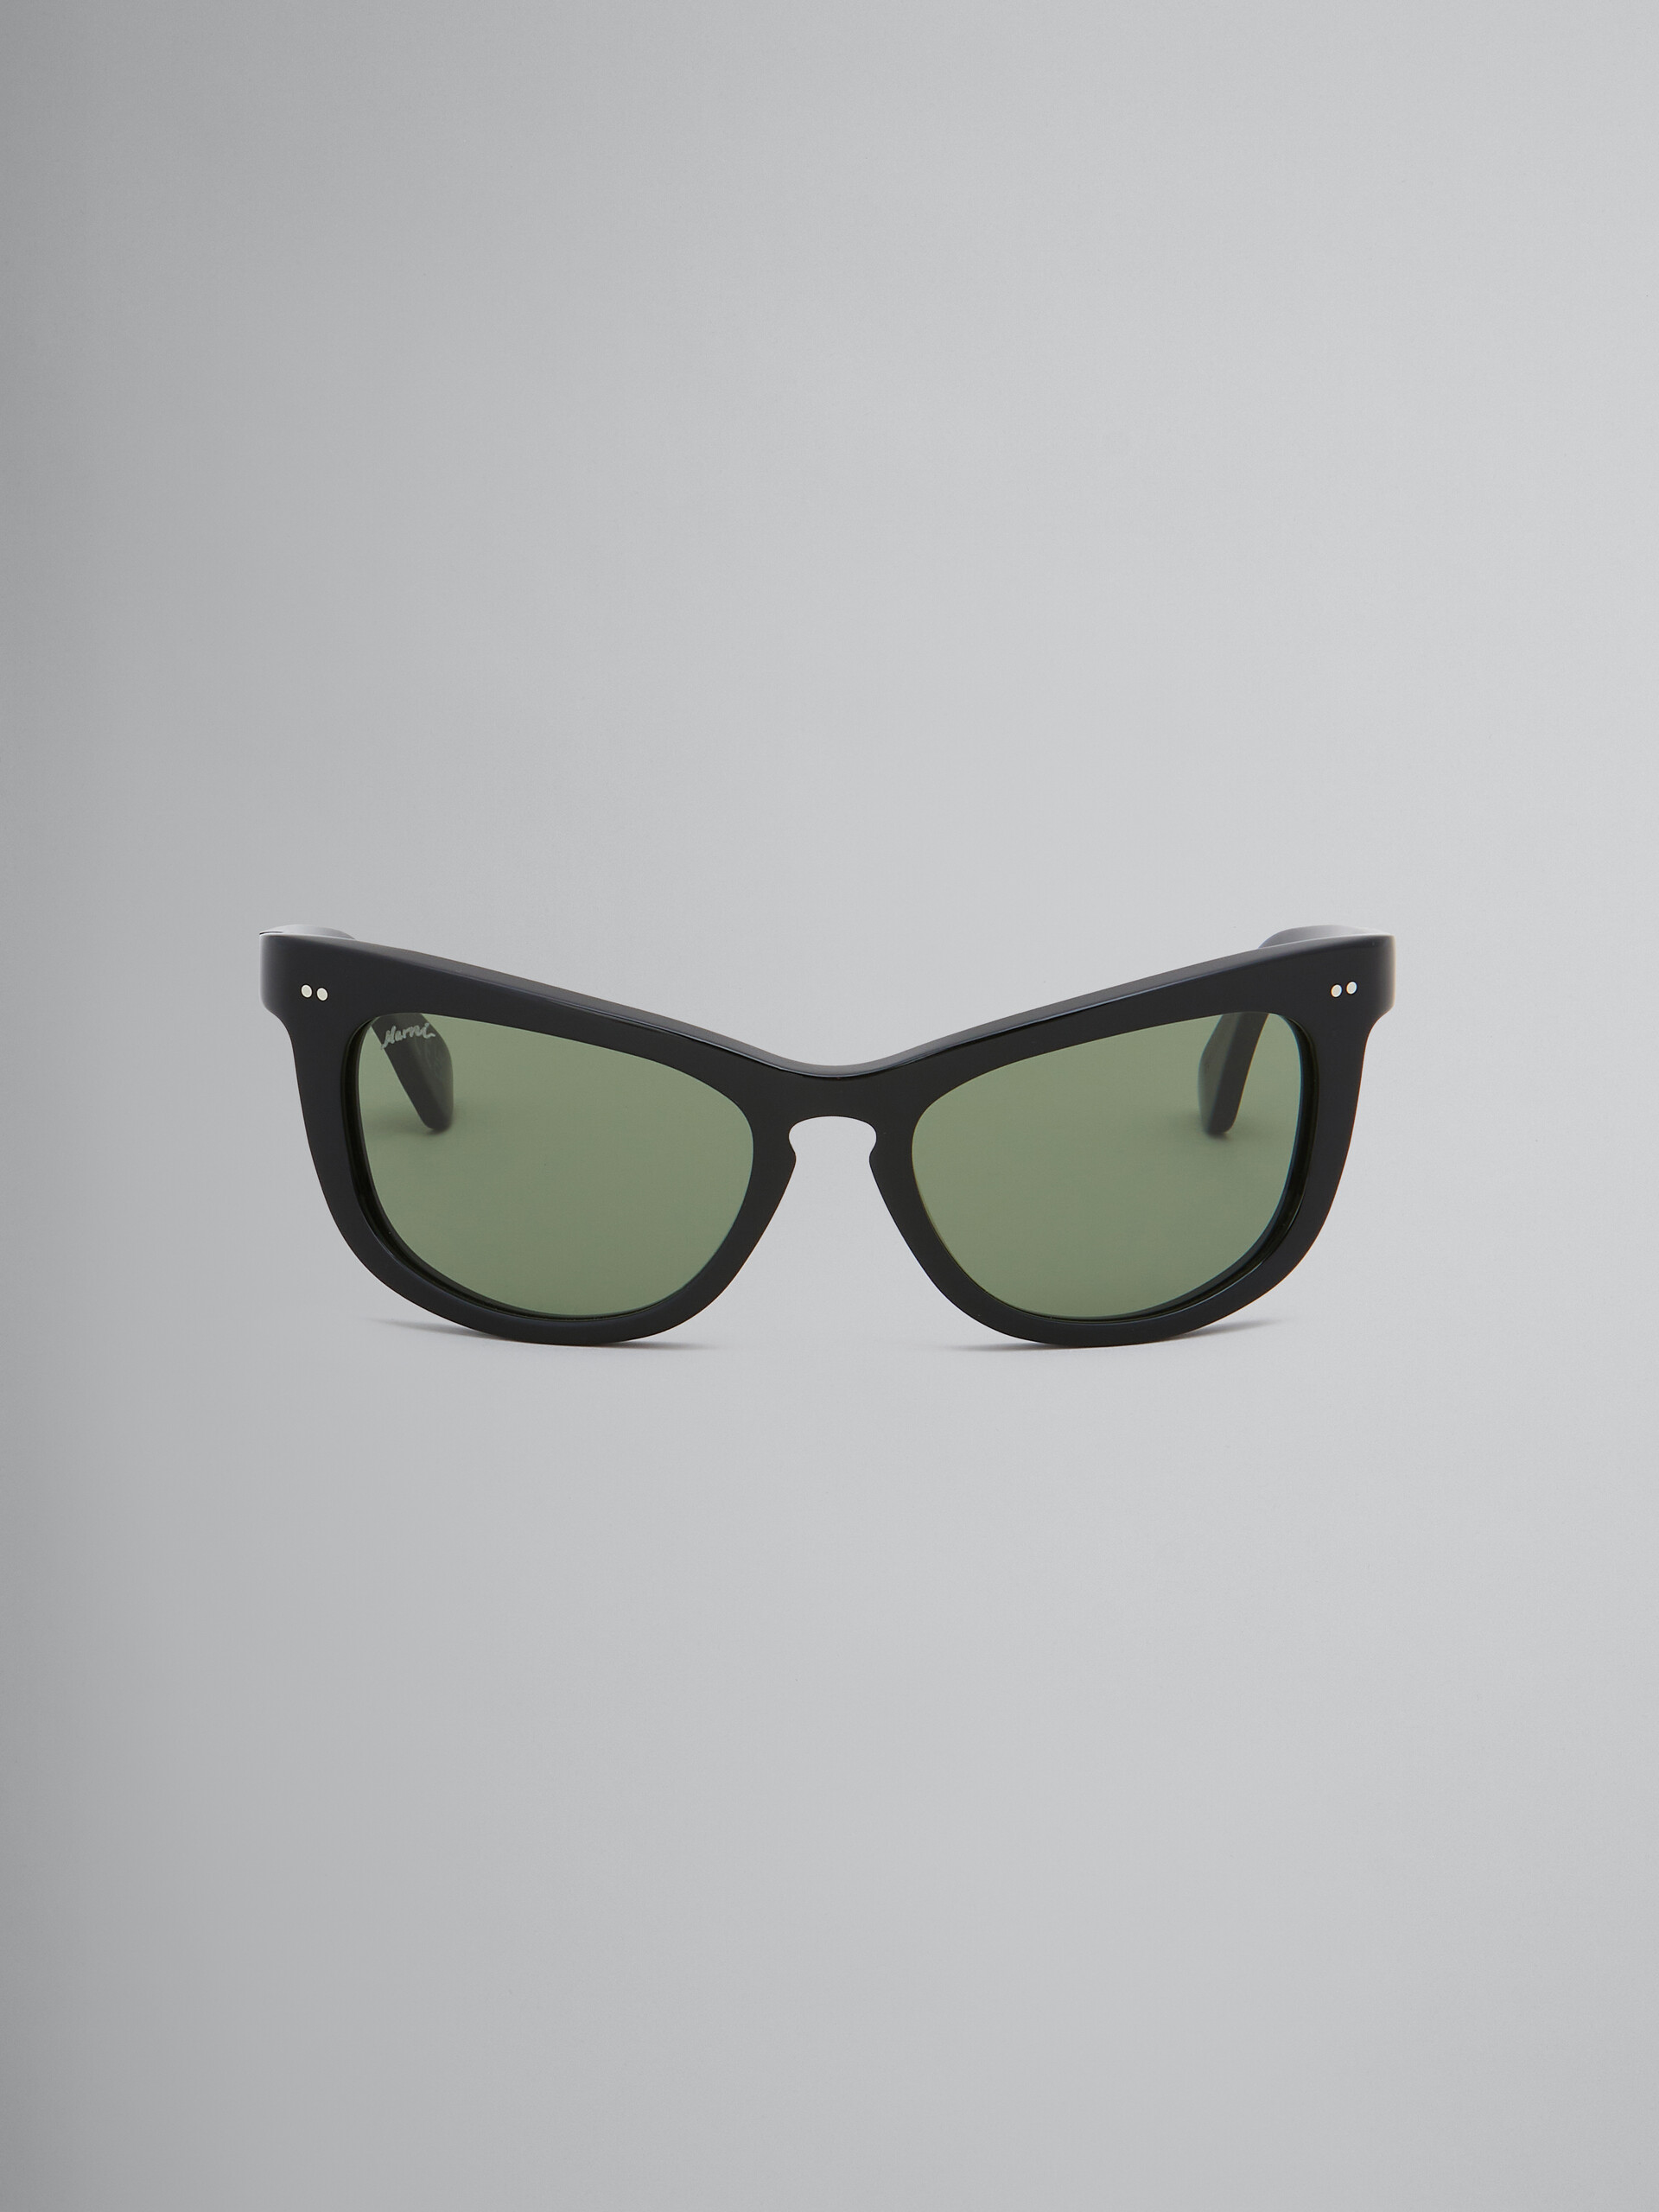 Schwarze Sonnenbrille Isamu - Optisch - Image 1